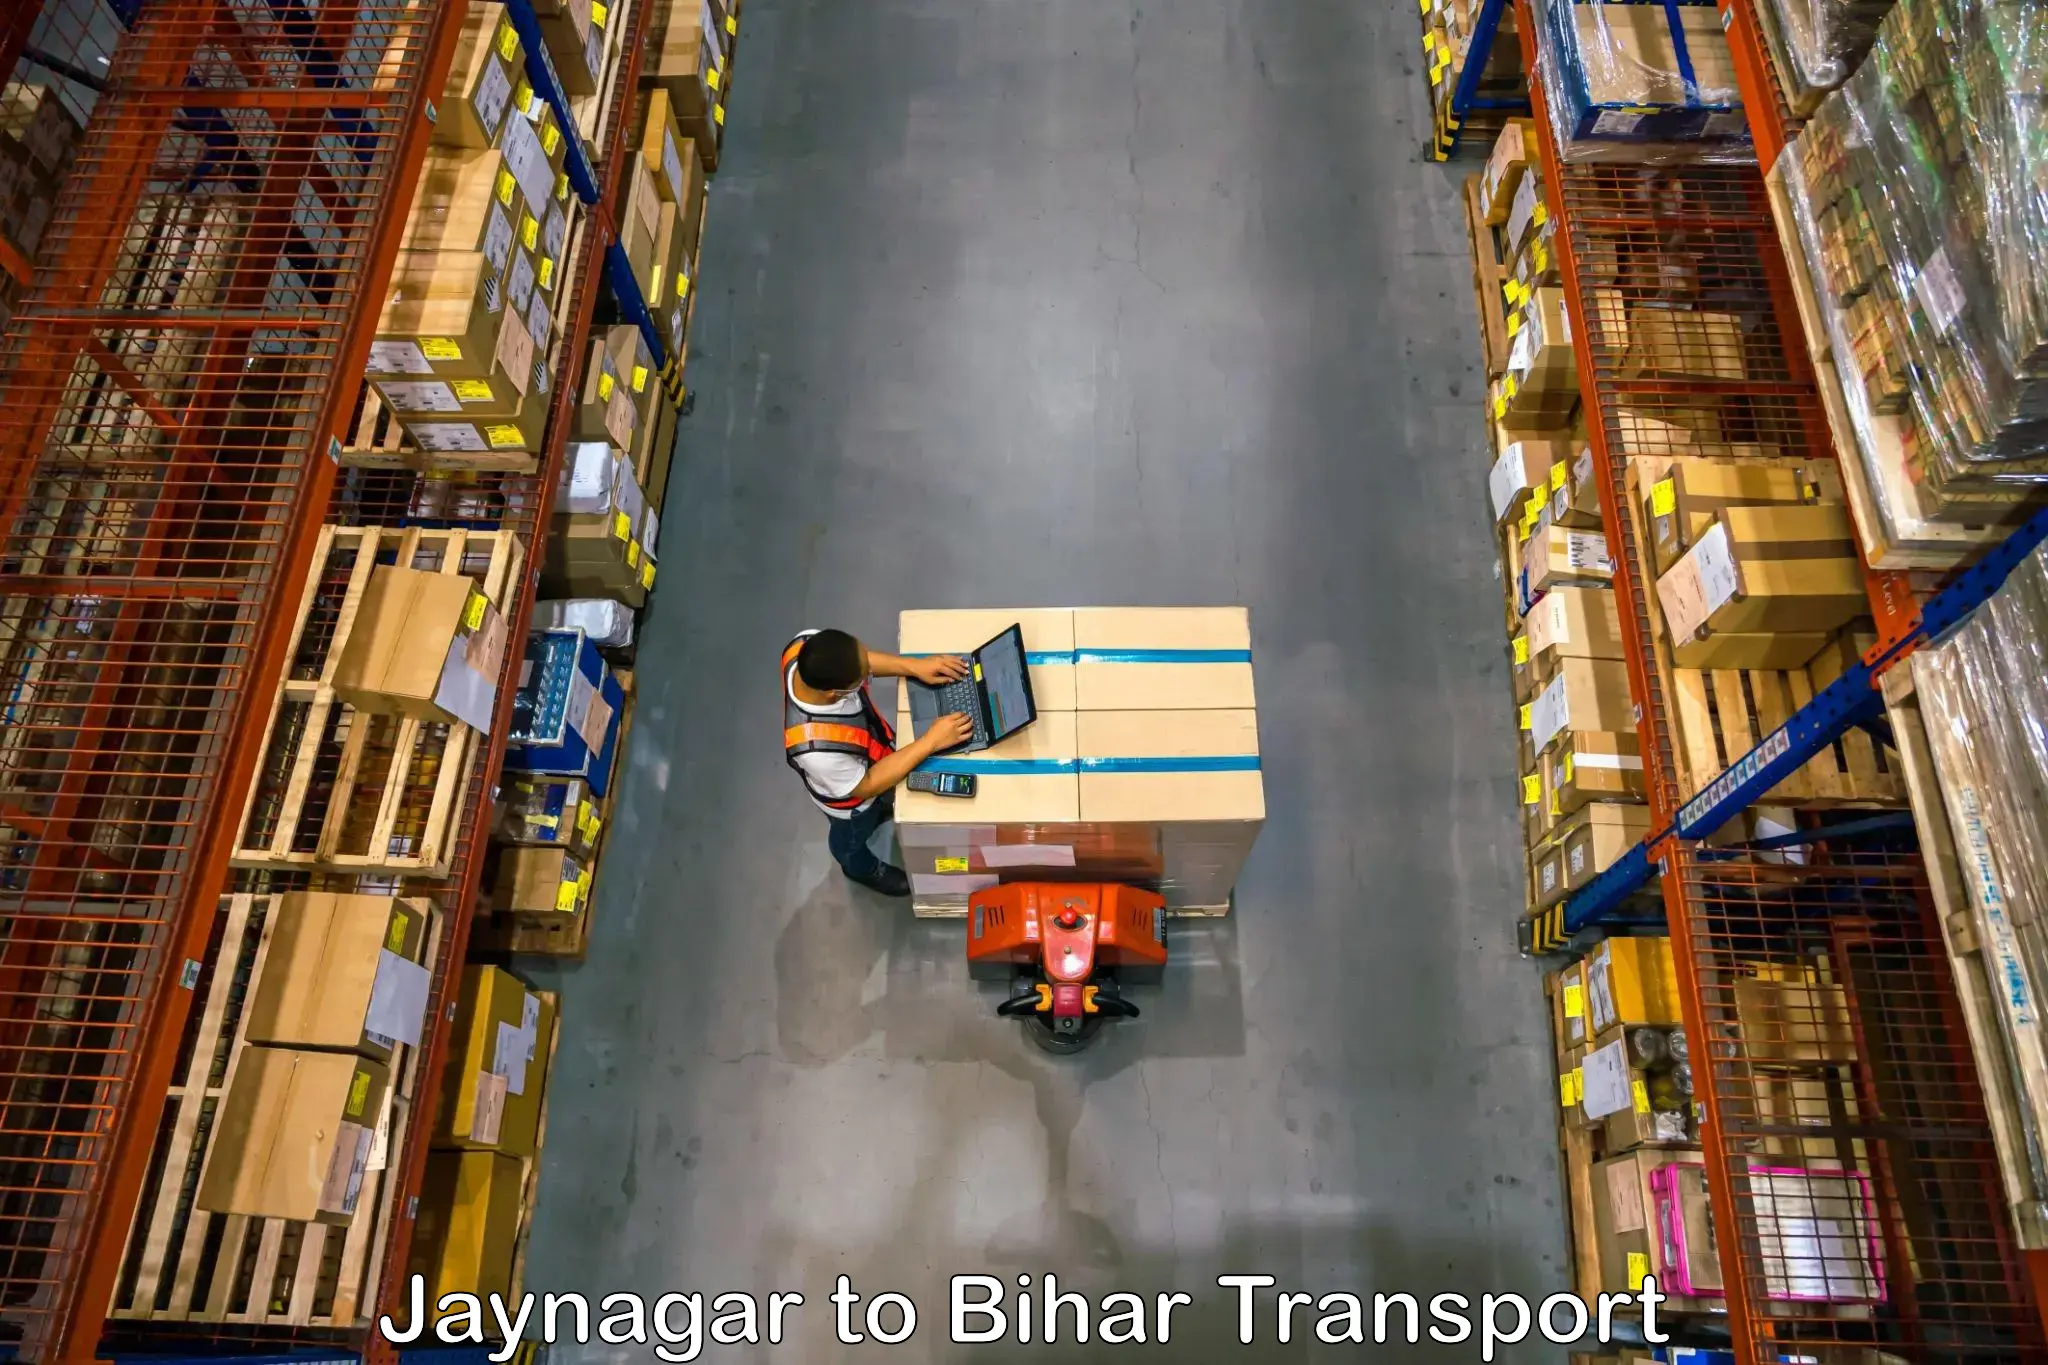 Part load transport service in India Jaynagar to Maheshkhunt